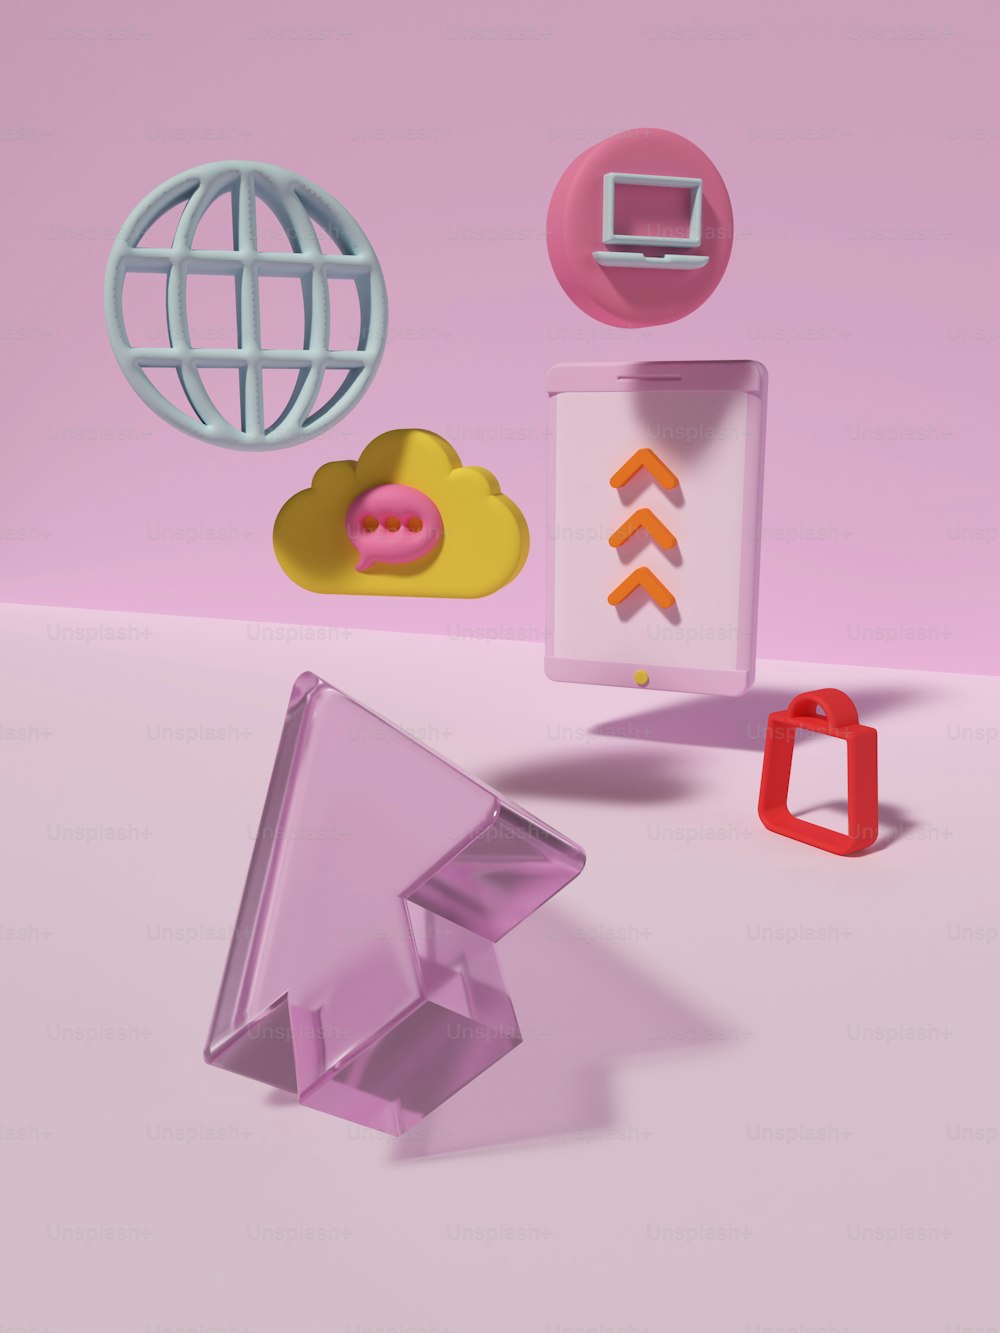 Un grupo de objetos que están en una superficie rosada